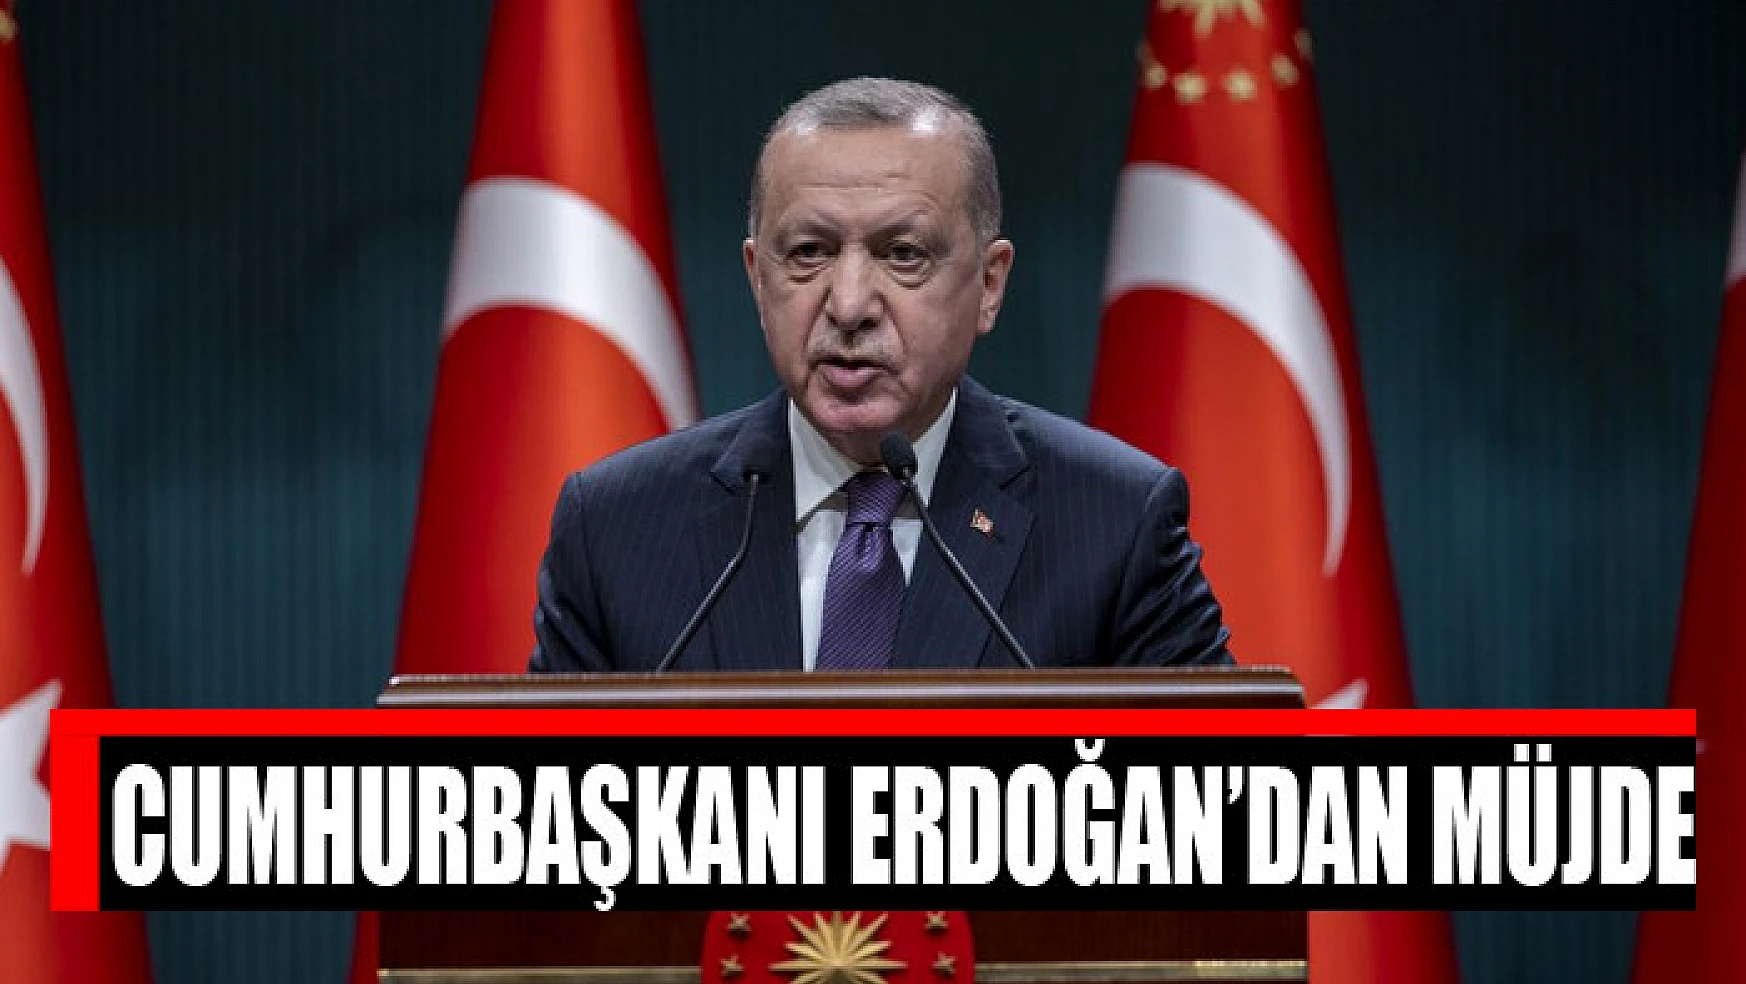 Cumhurbaşkanı Erdoğan'dan memurlara müjde